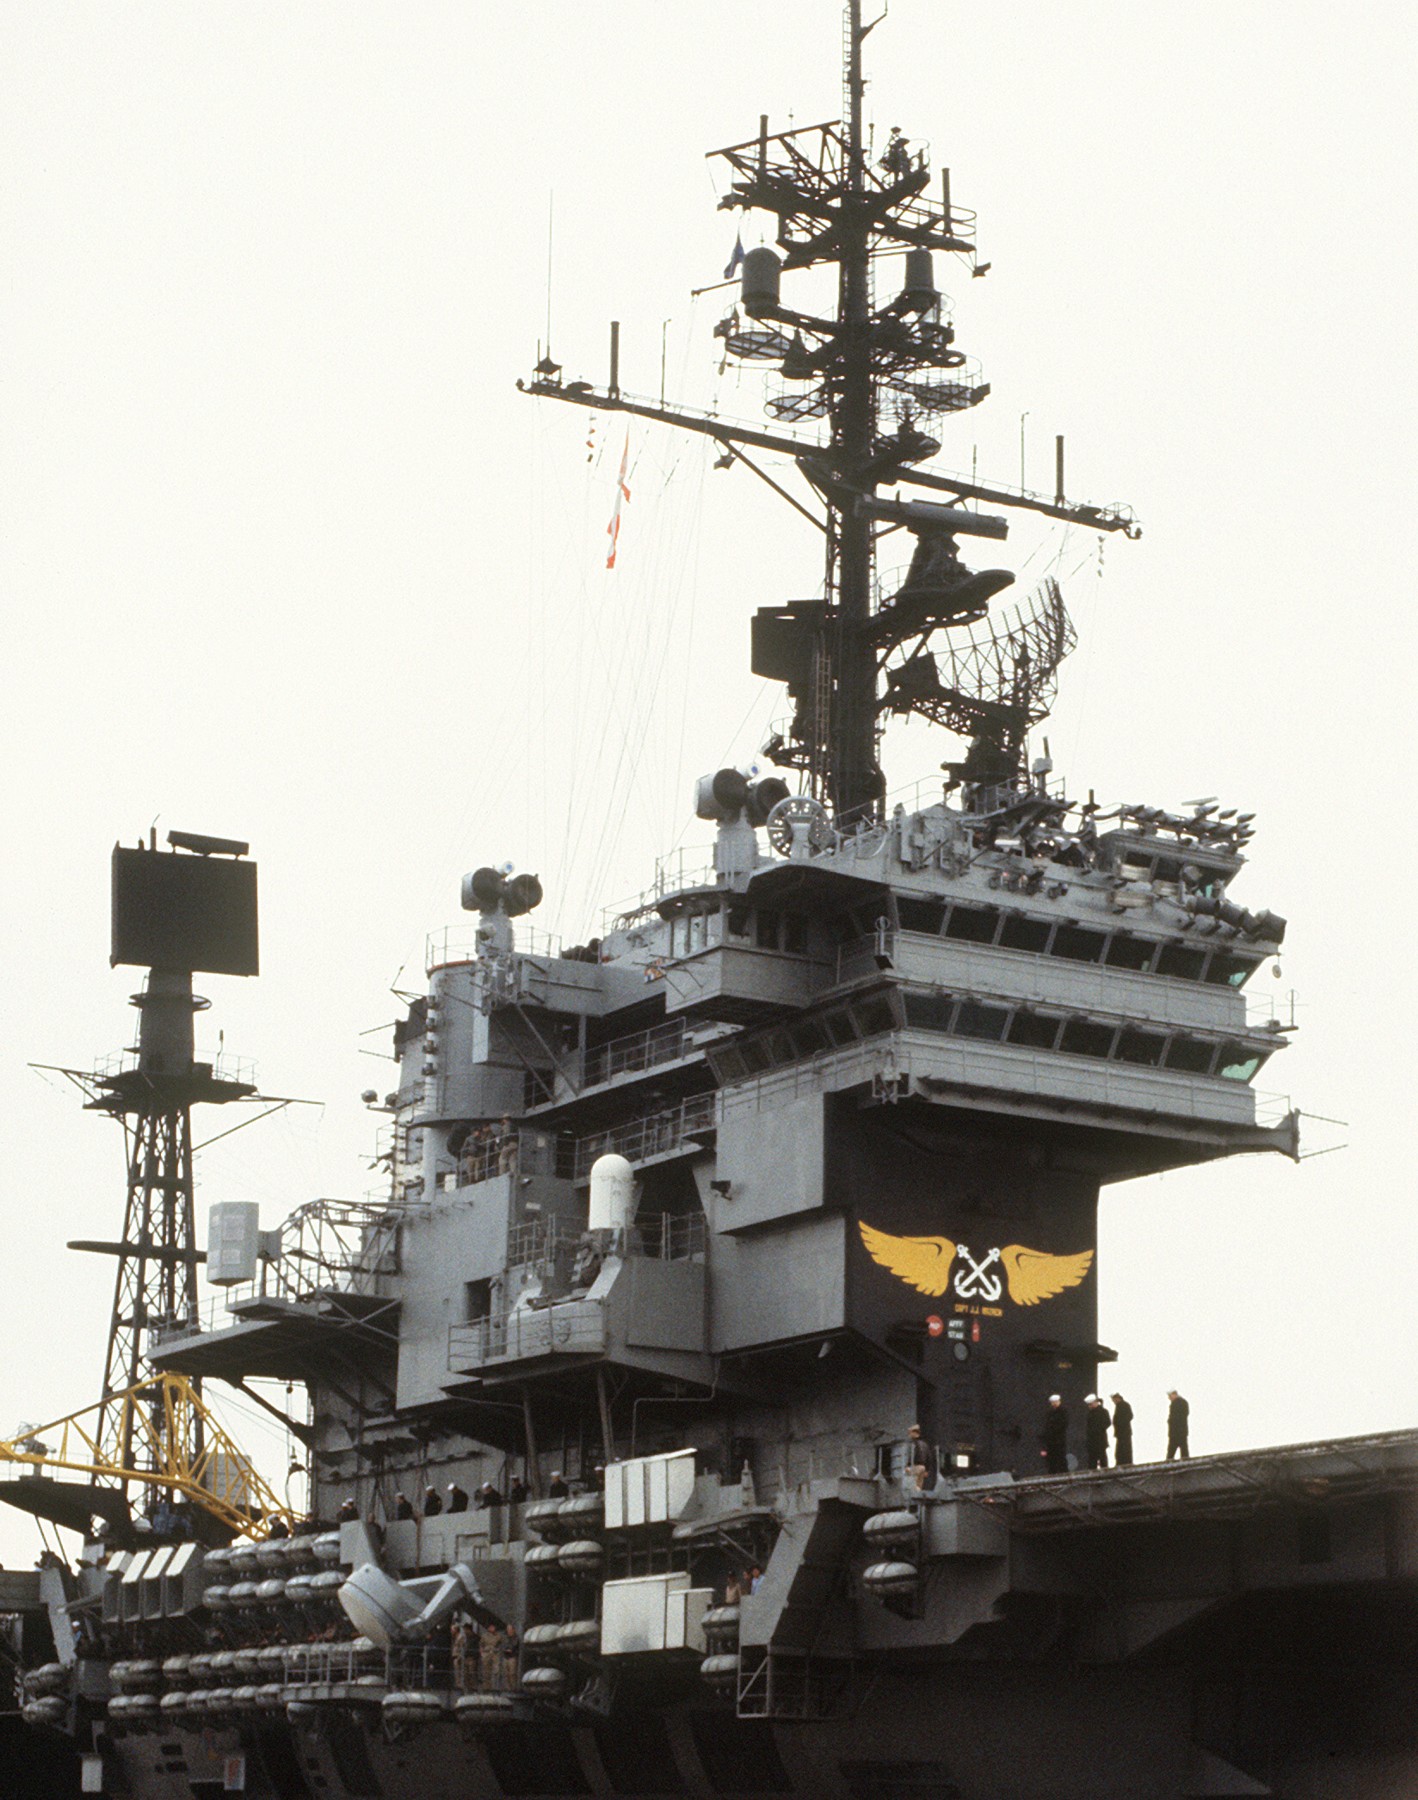 cv-66 uss america kitty hawk class aircraft carrier us navy 105